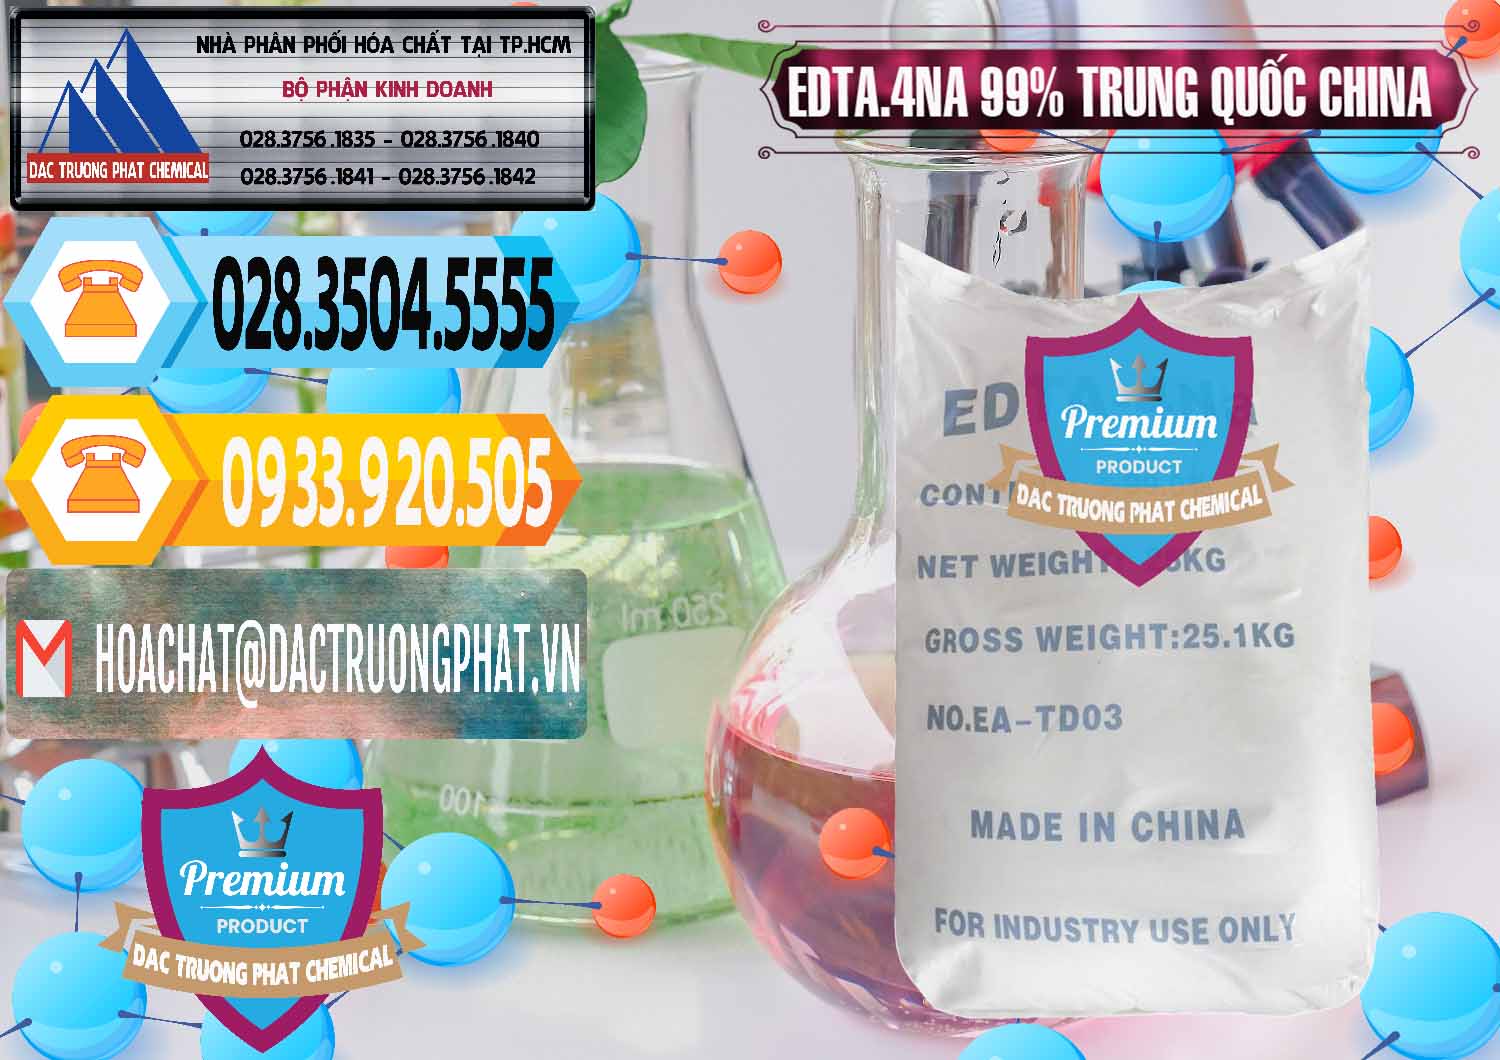 Bán ( cung cấp ) EDTA.4NA - EDTA Muối 99% Trung Quốc China - 0292 - Đơn vị chuyên phân phối & cung ứng hóa chất tại TP.HCM - hoachattayrua.net